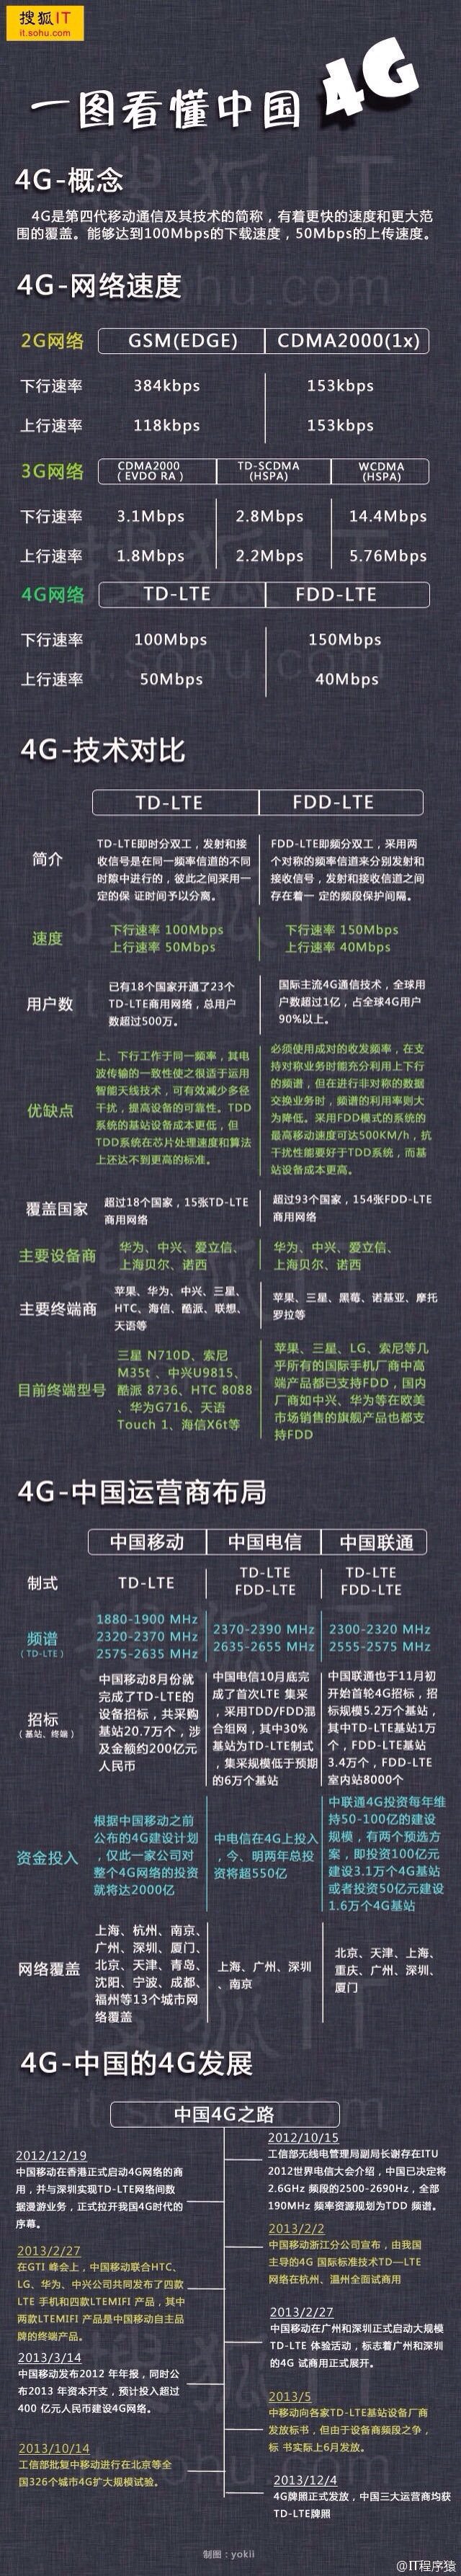 一图看懂中国4G-完美源码